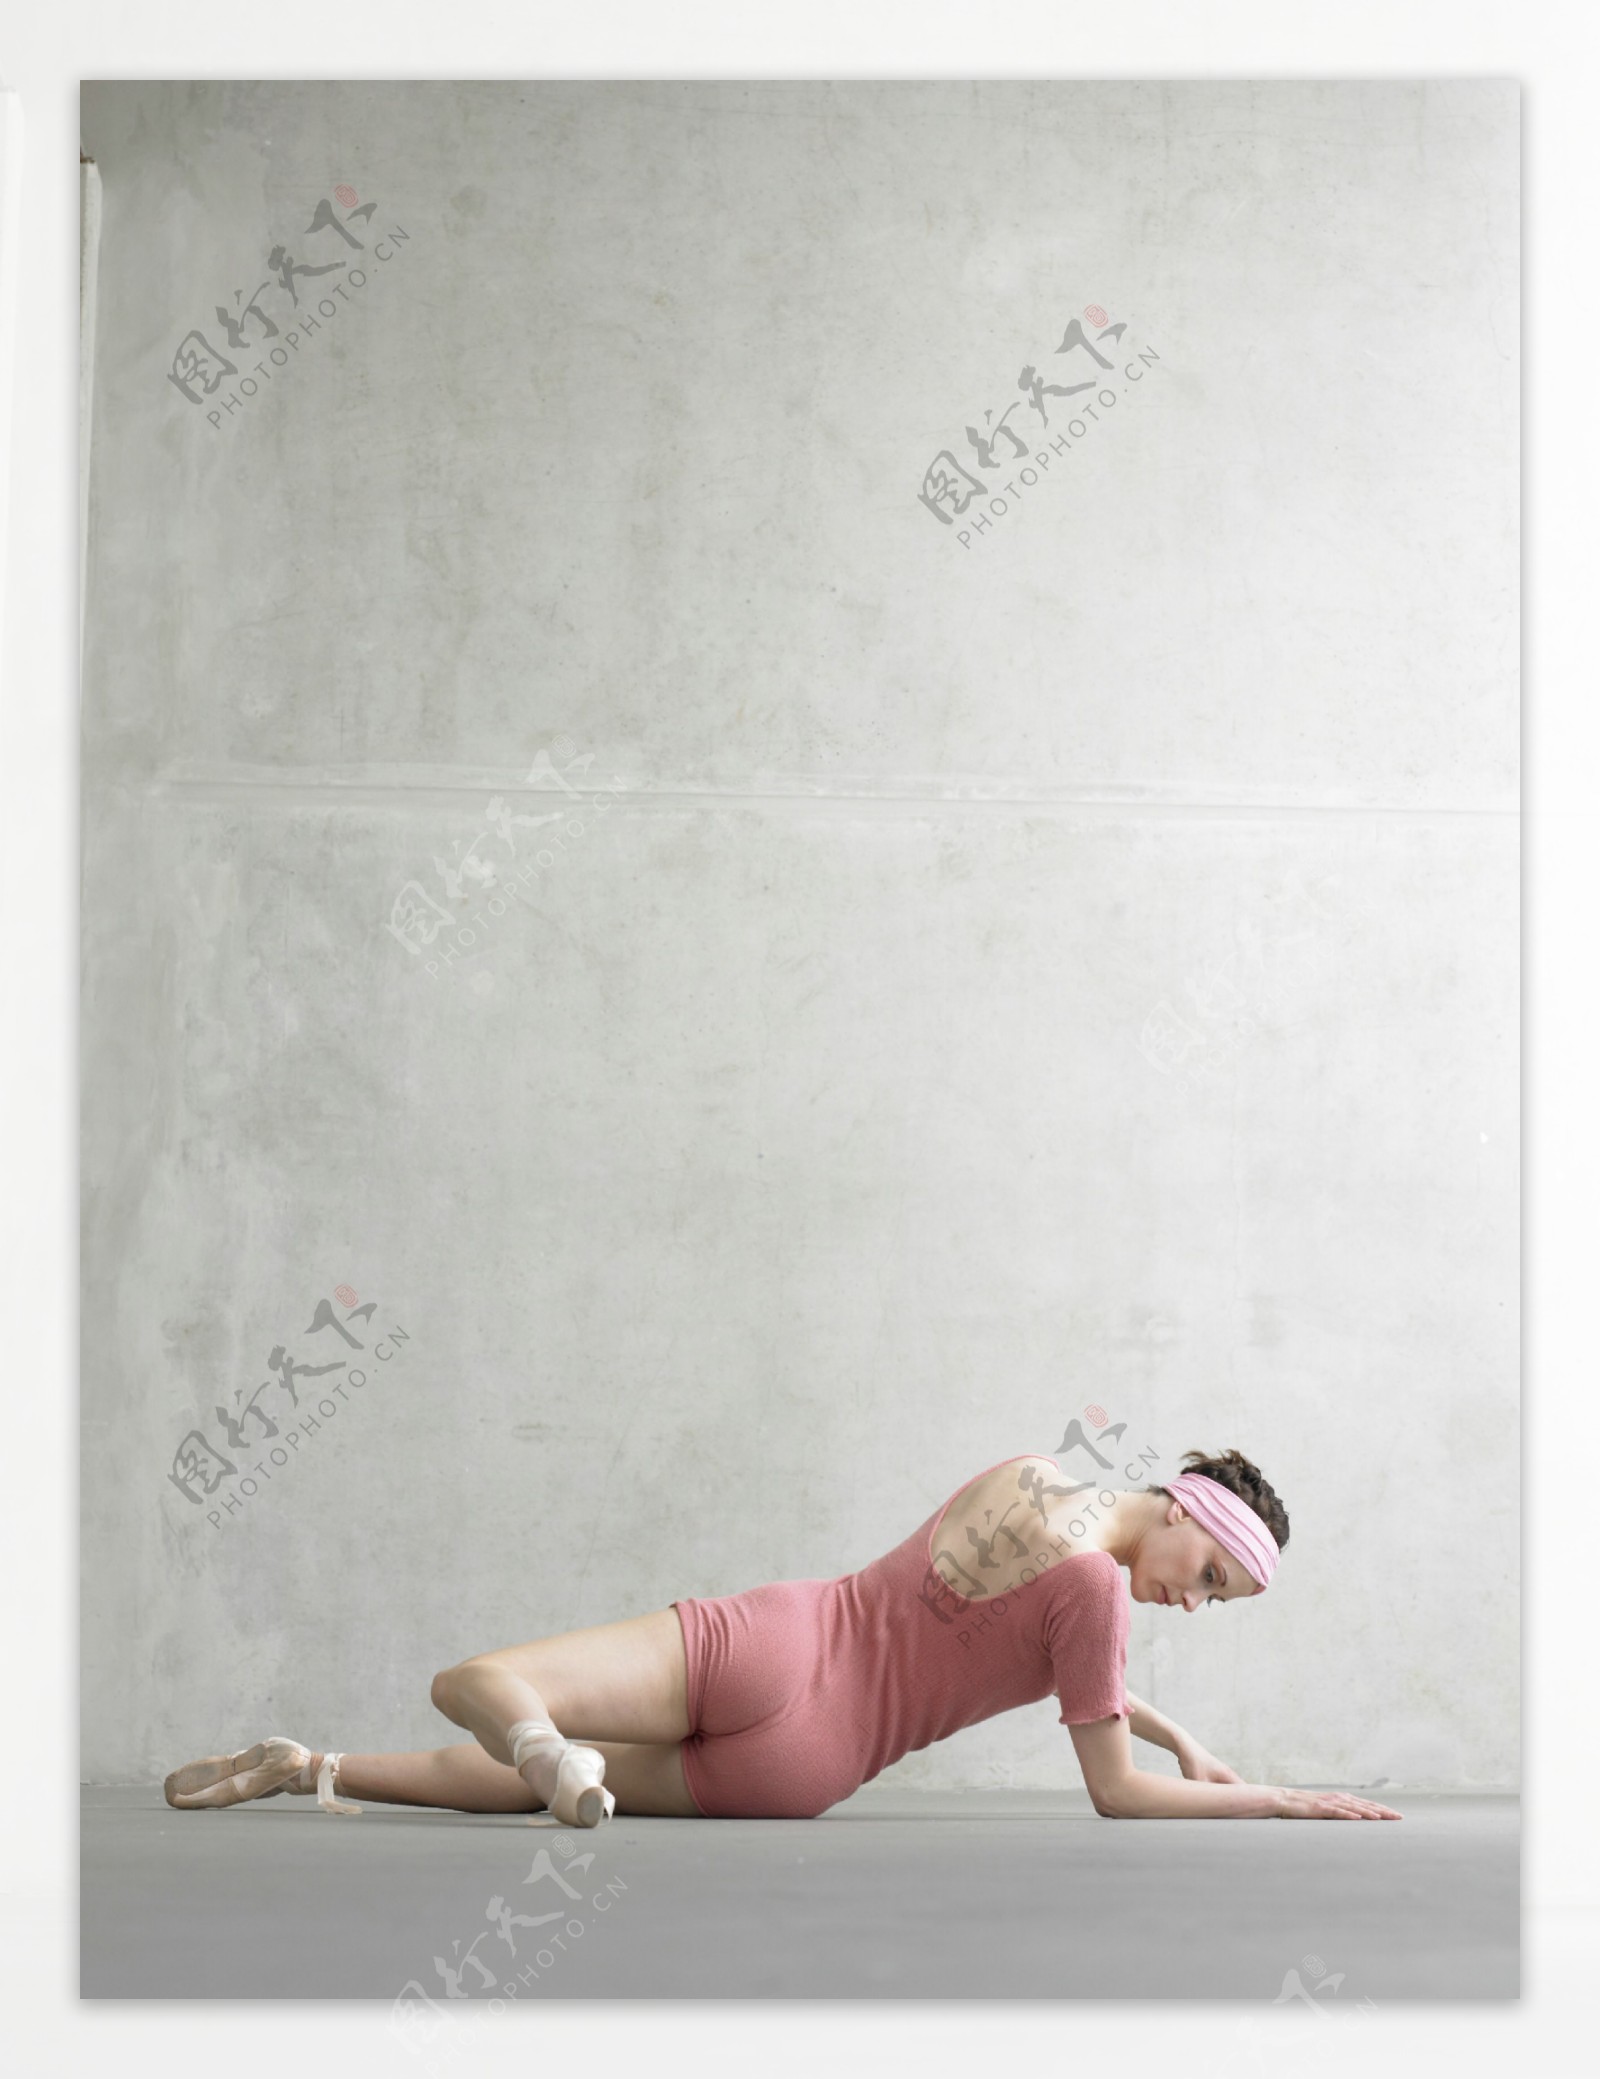 侧身躺着的健身舞蹈美女图片